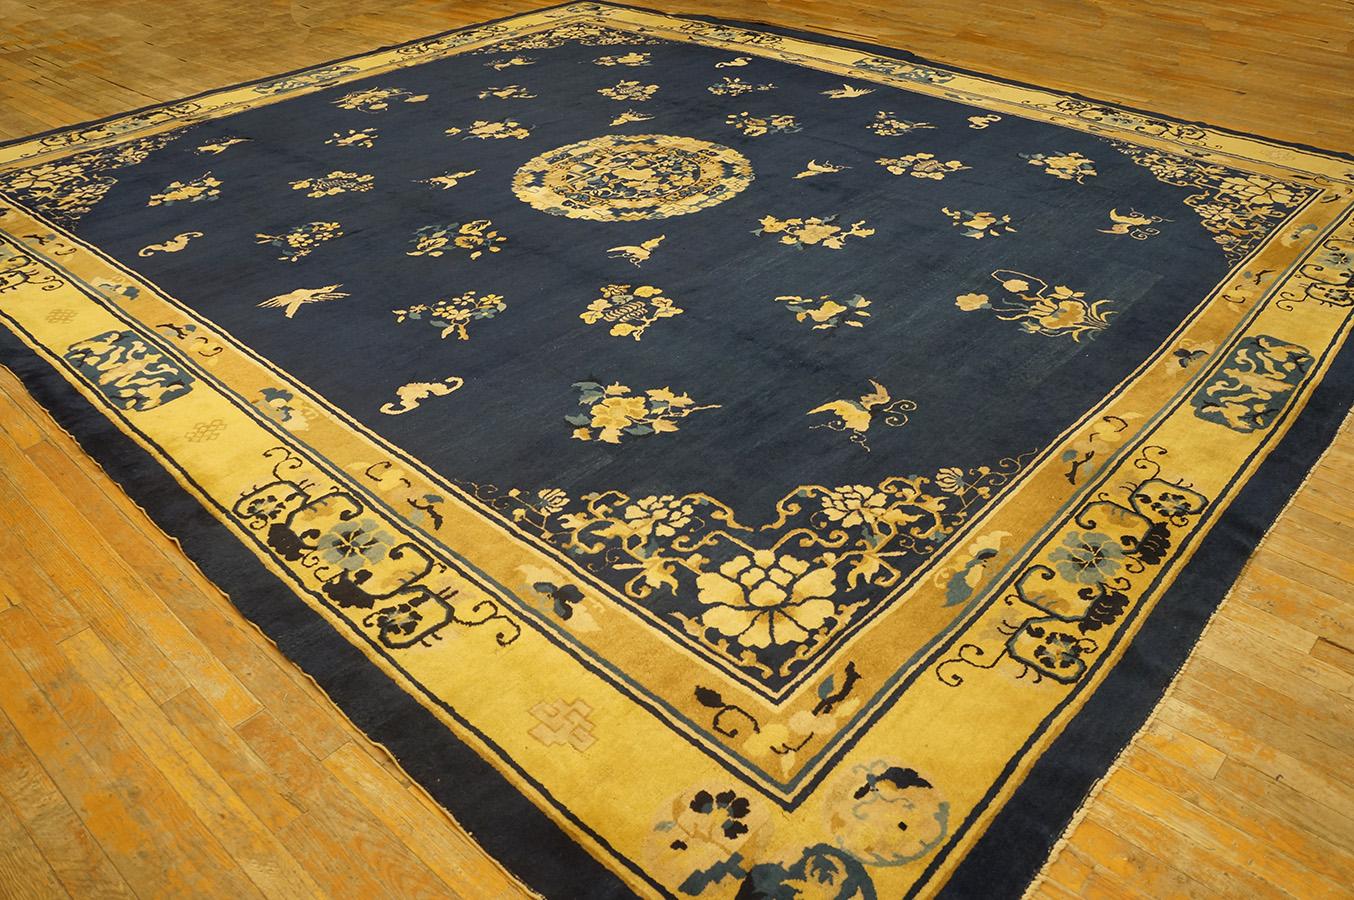 Antique Chinese Peking rug, Size: 12' 6'' x 14' 4''.